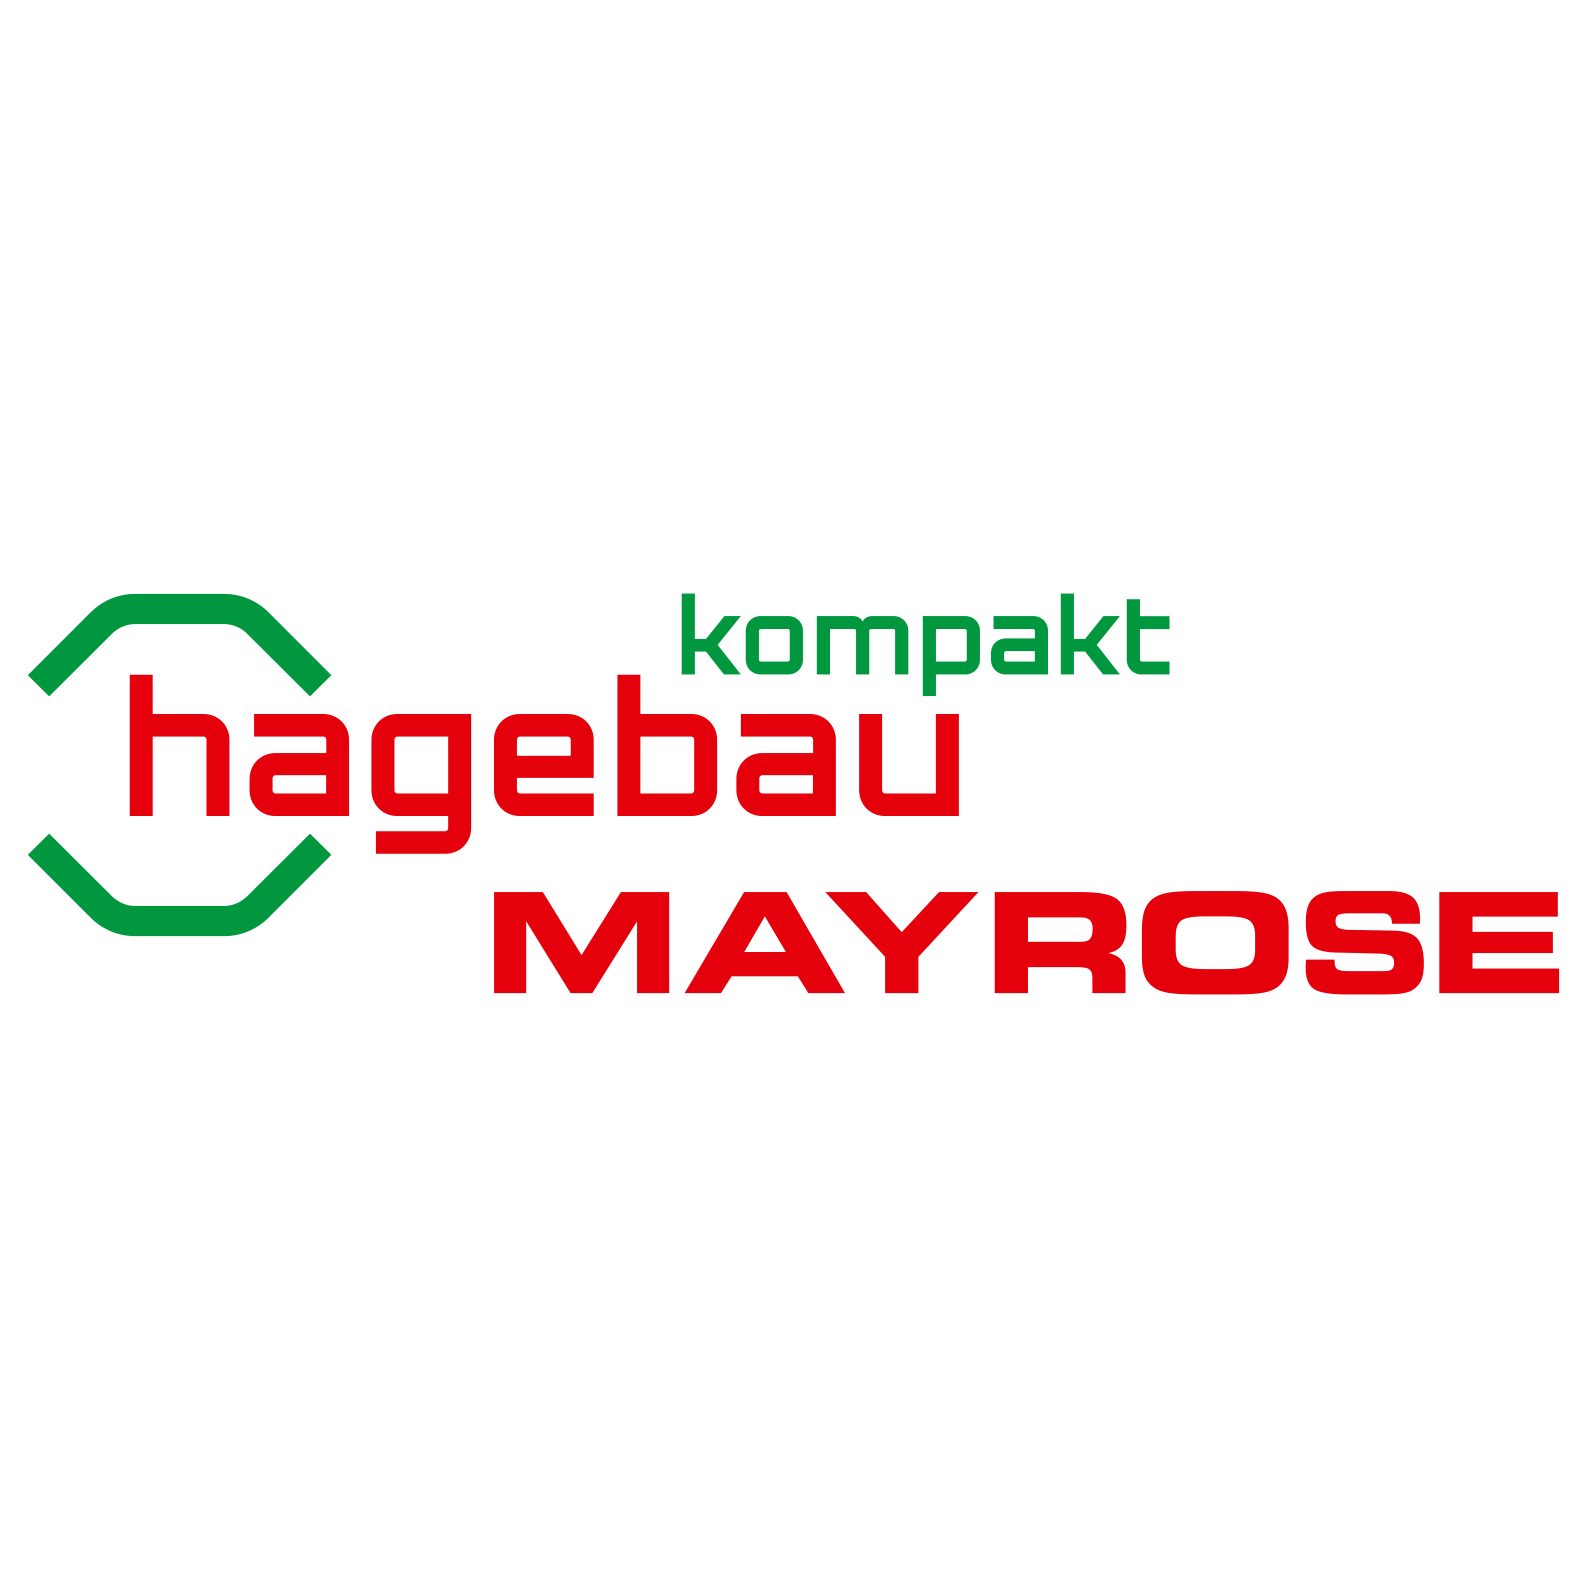 Kundenlogo hagebau kompakt / Mayrose-Rheine GmbH & Co. KG